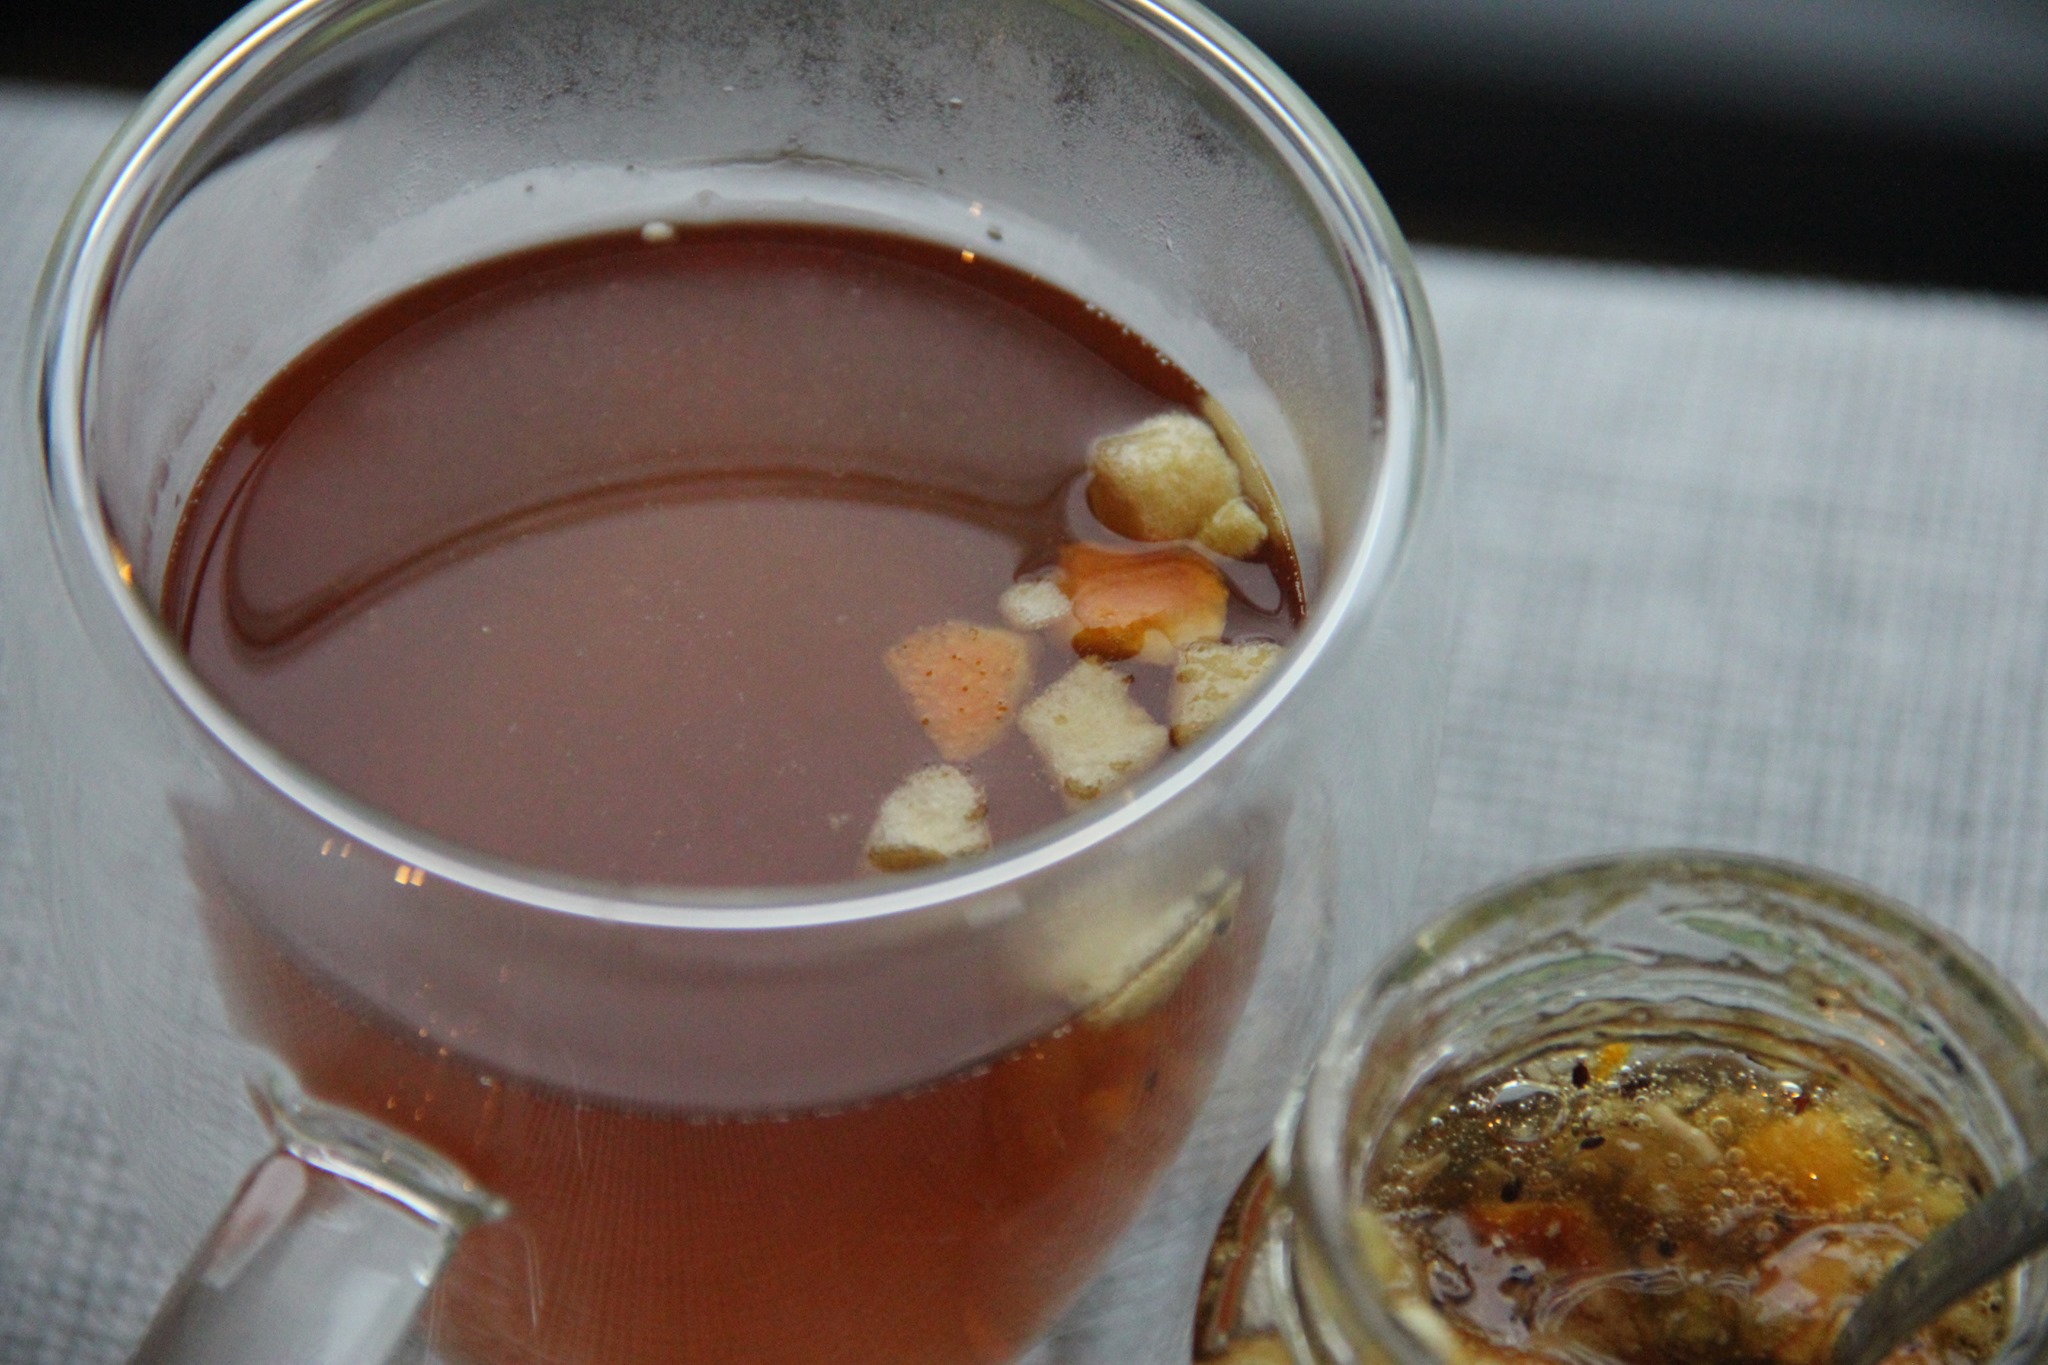 Miodowy bursztyn idealny do jesiennej herbaty